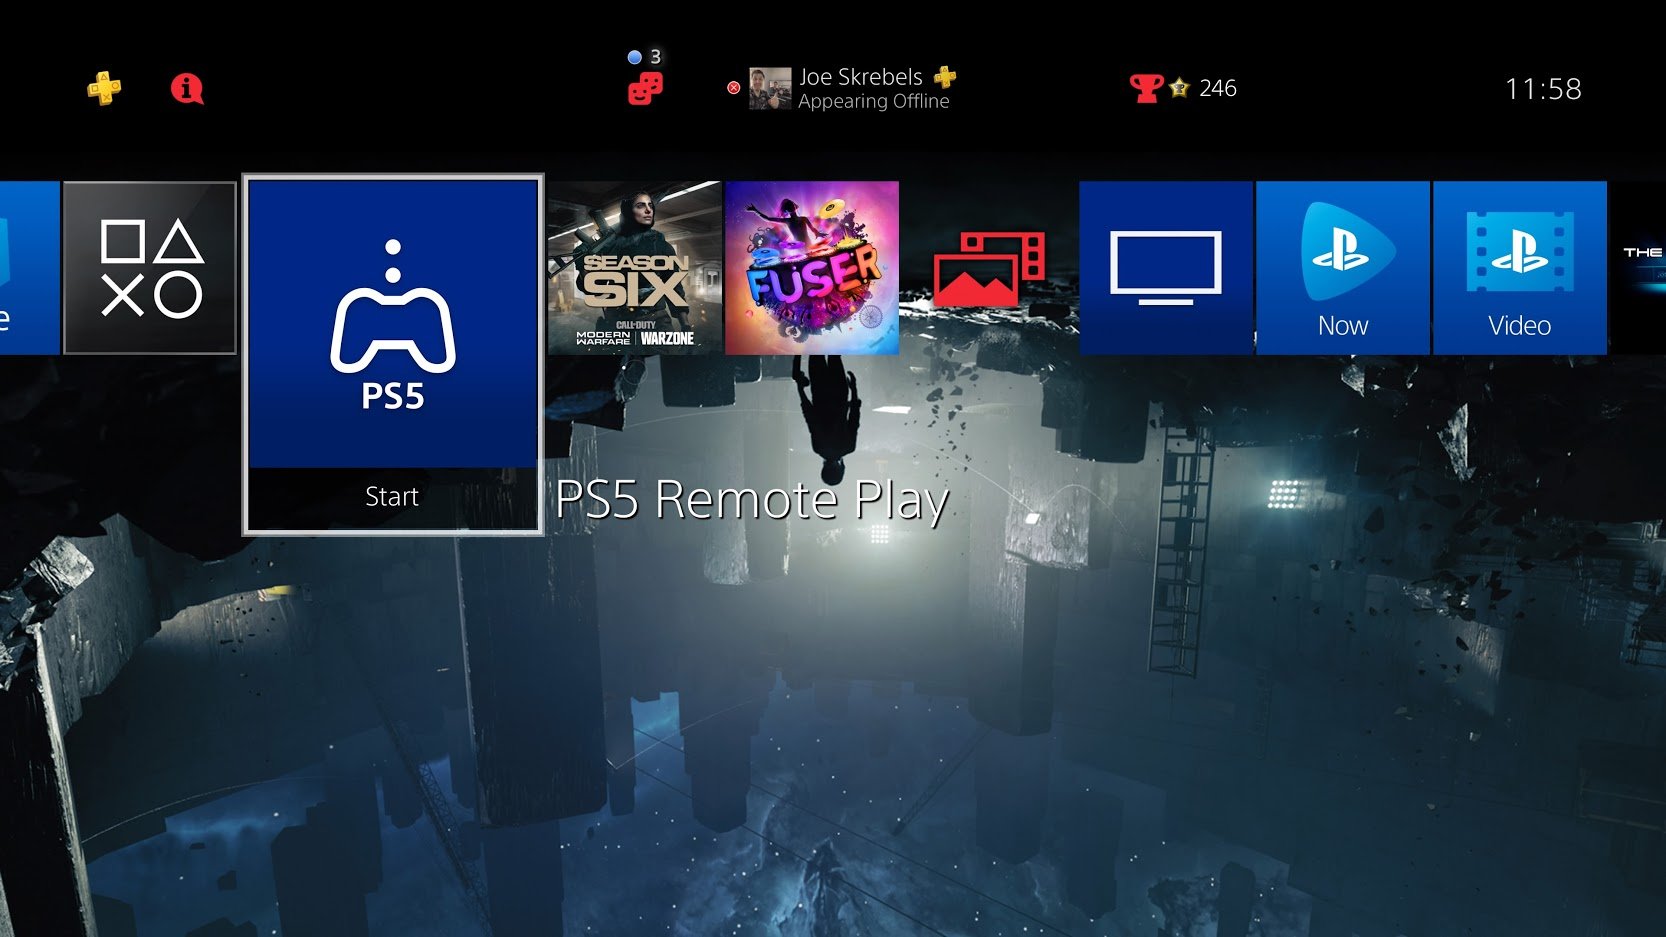 Um aplicativo de para jogar remotamente jogos do PS5 apareceu no painel do PS4, mas atualmente não consegue conectar os dois consoles.